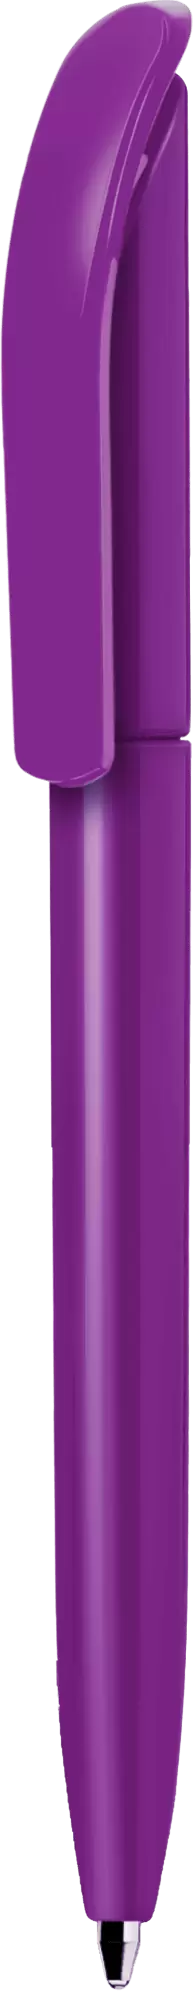 Ручка VIVALDI COLOR Фиолетовая (сиреневая) 1336-24